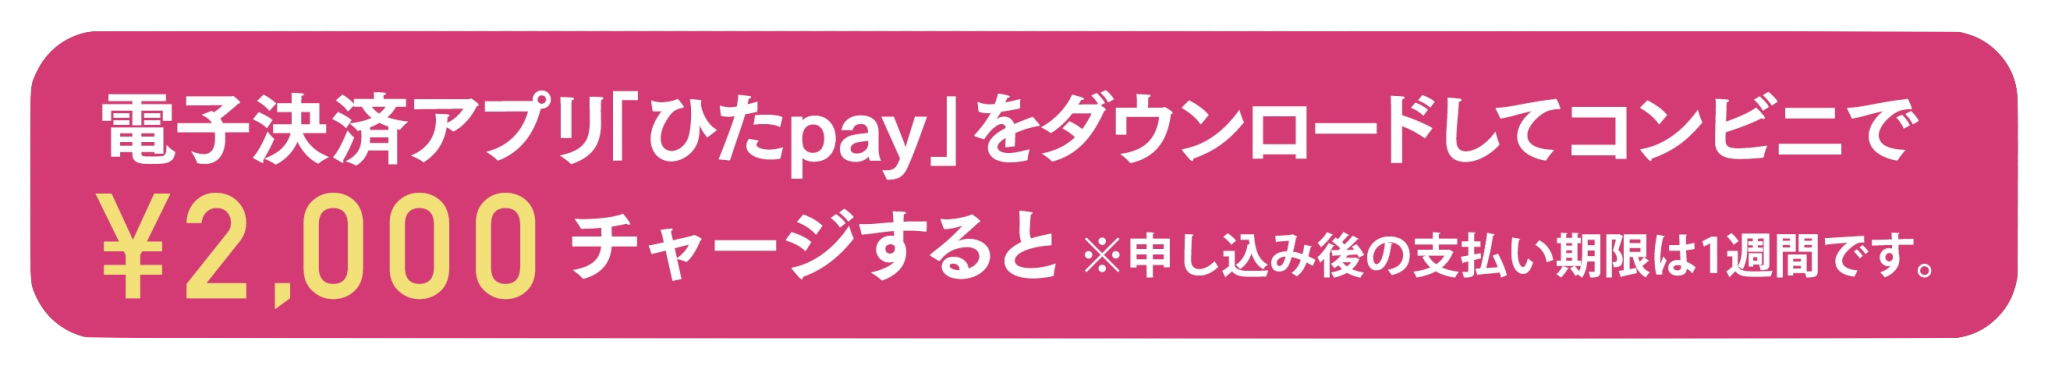 電子決済アプリ「ひたpay」をダウンロードしてコンビニで¥2,000 チャージすると